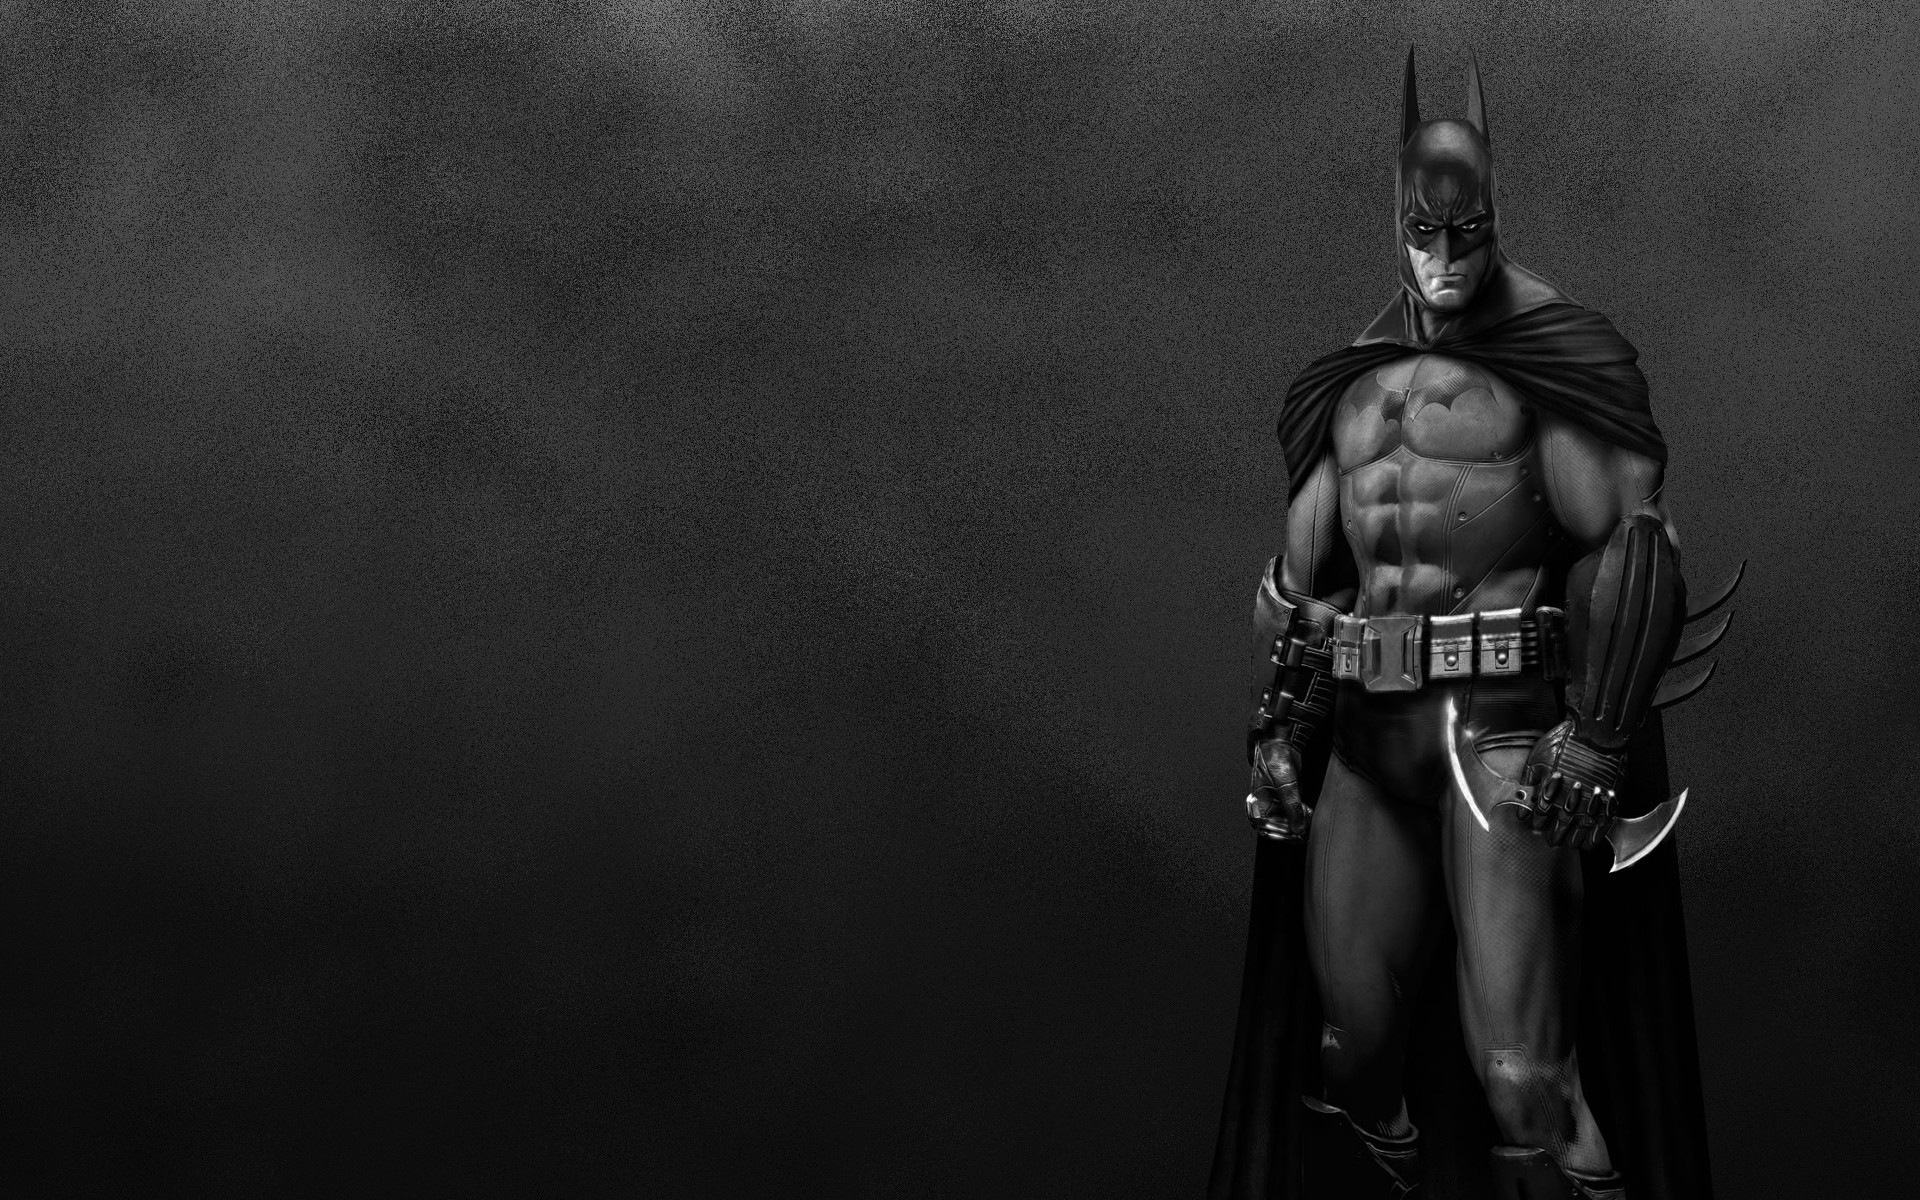 Batman wallpaper download now. Batman wallpaper HD